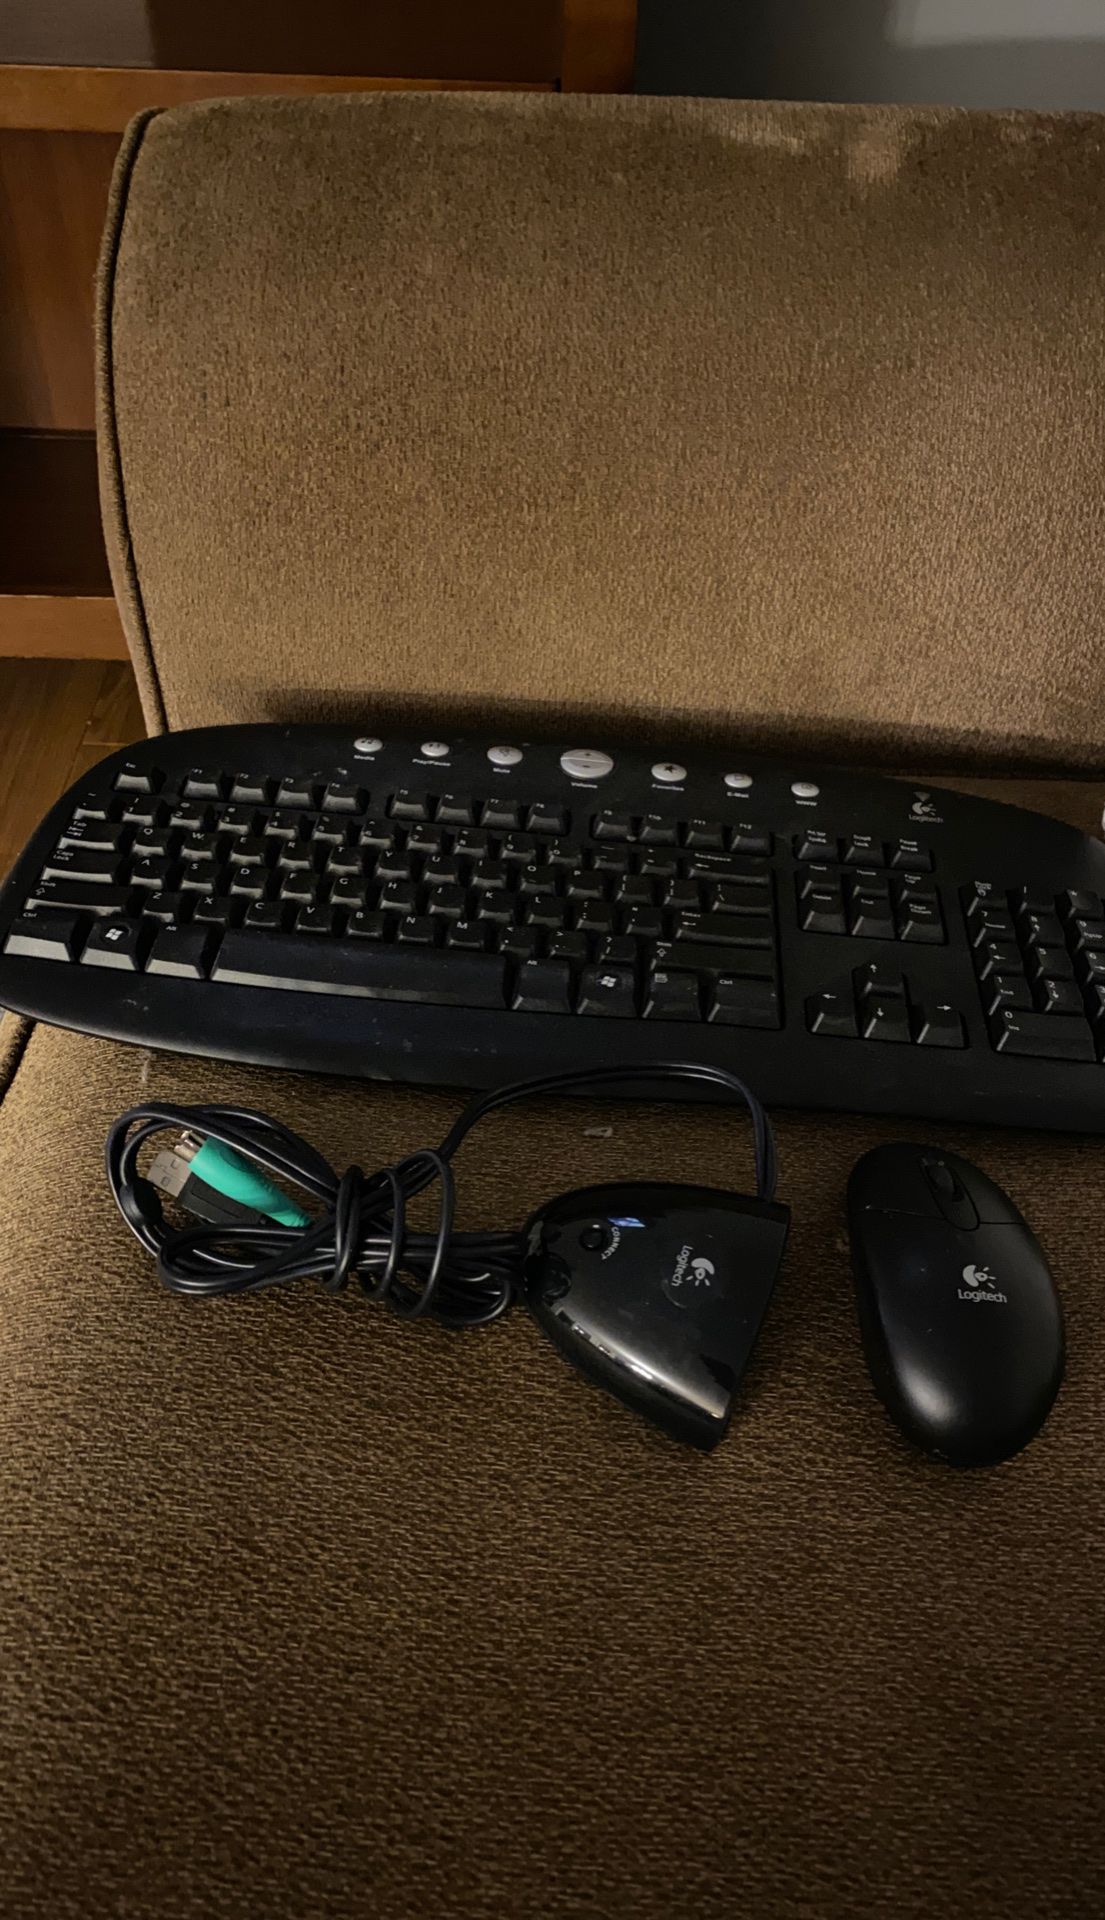 Logitech Wireless Mouse and Keyboard Combo